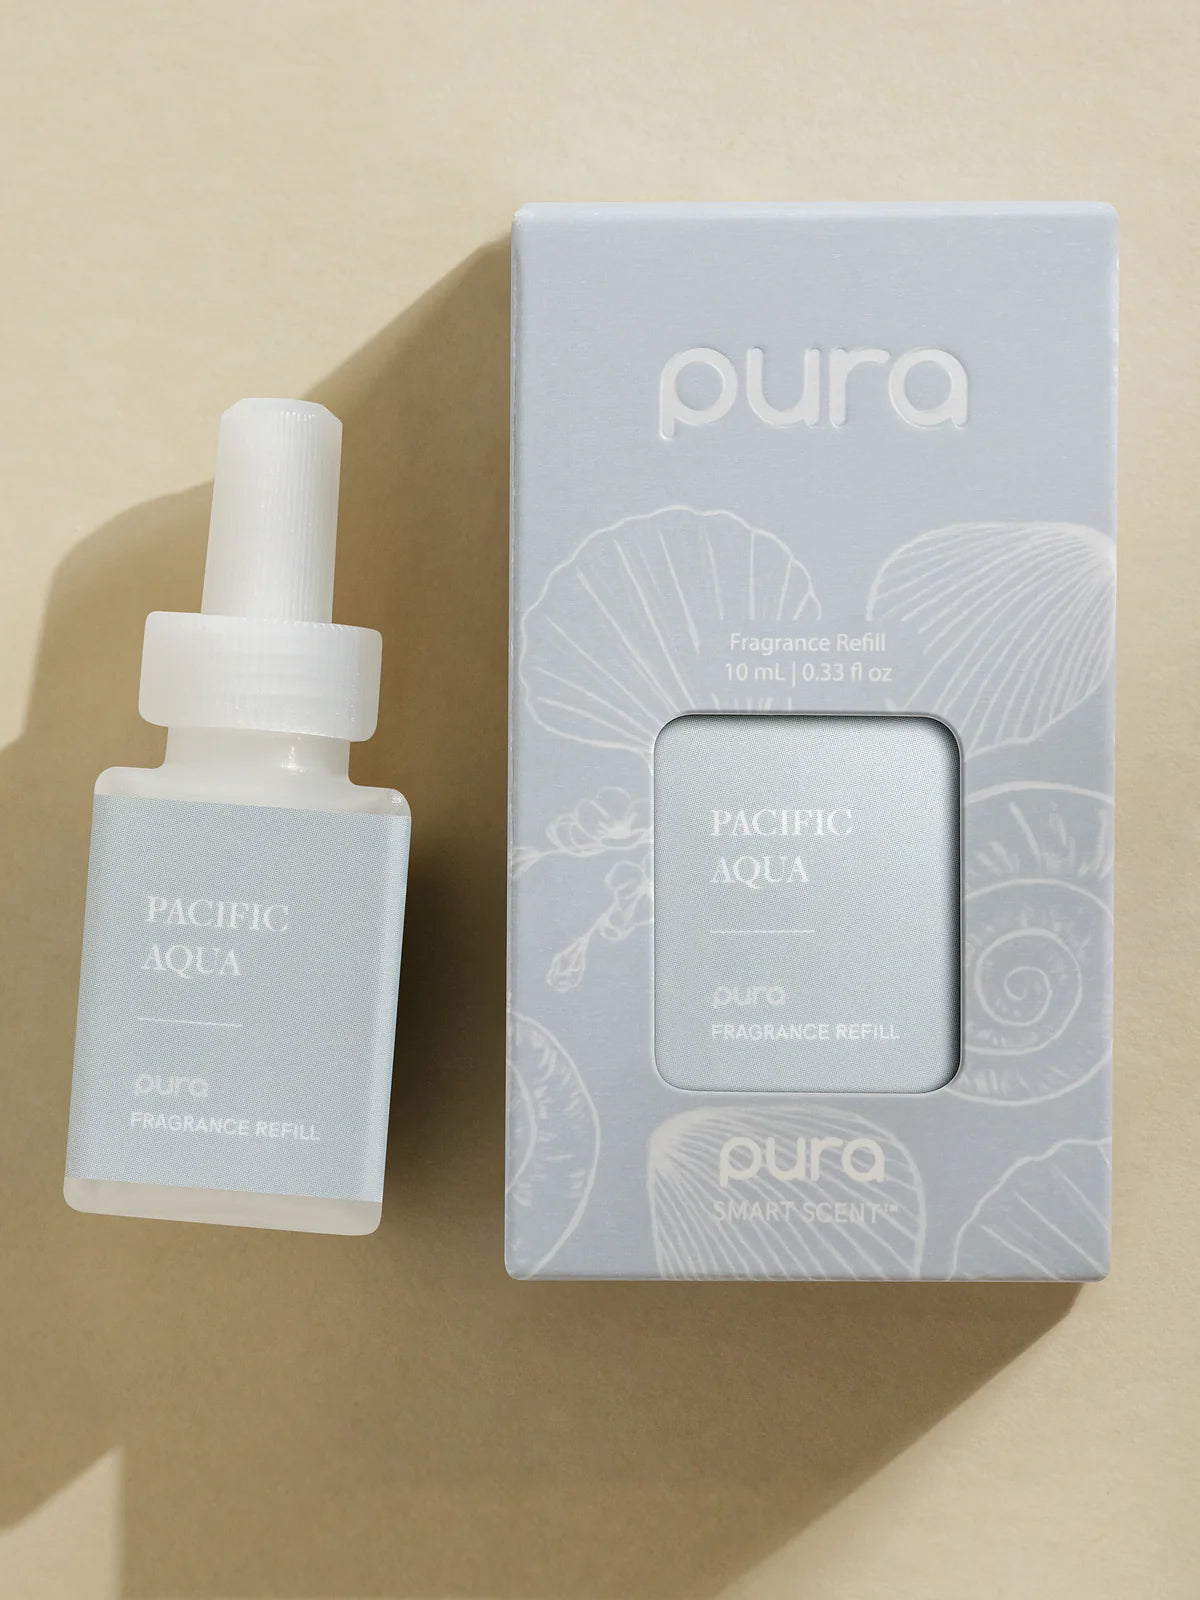 Pura Pacific Aqua Fragrance Refill